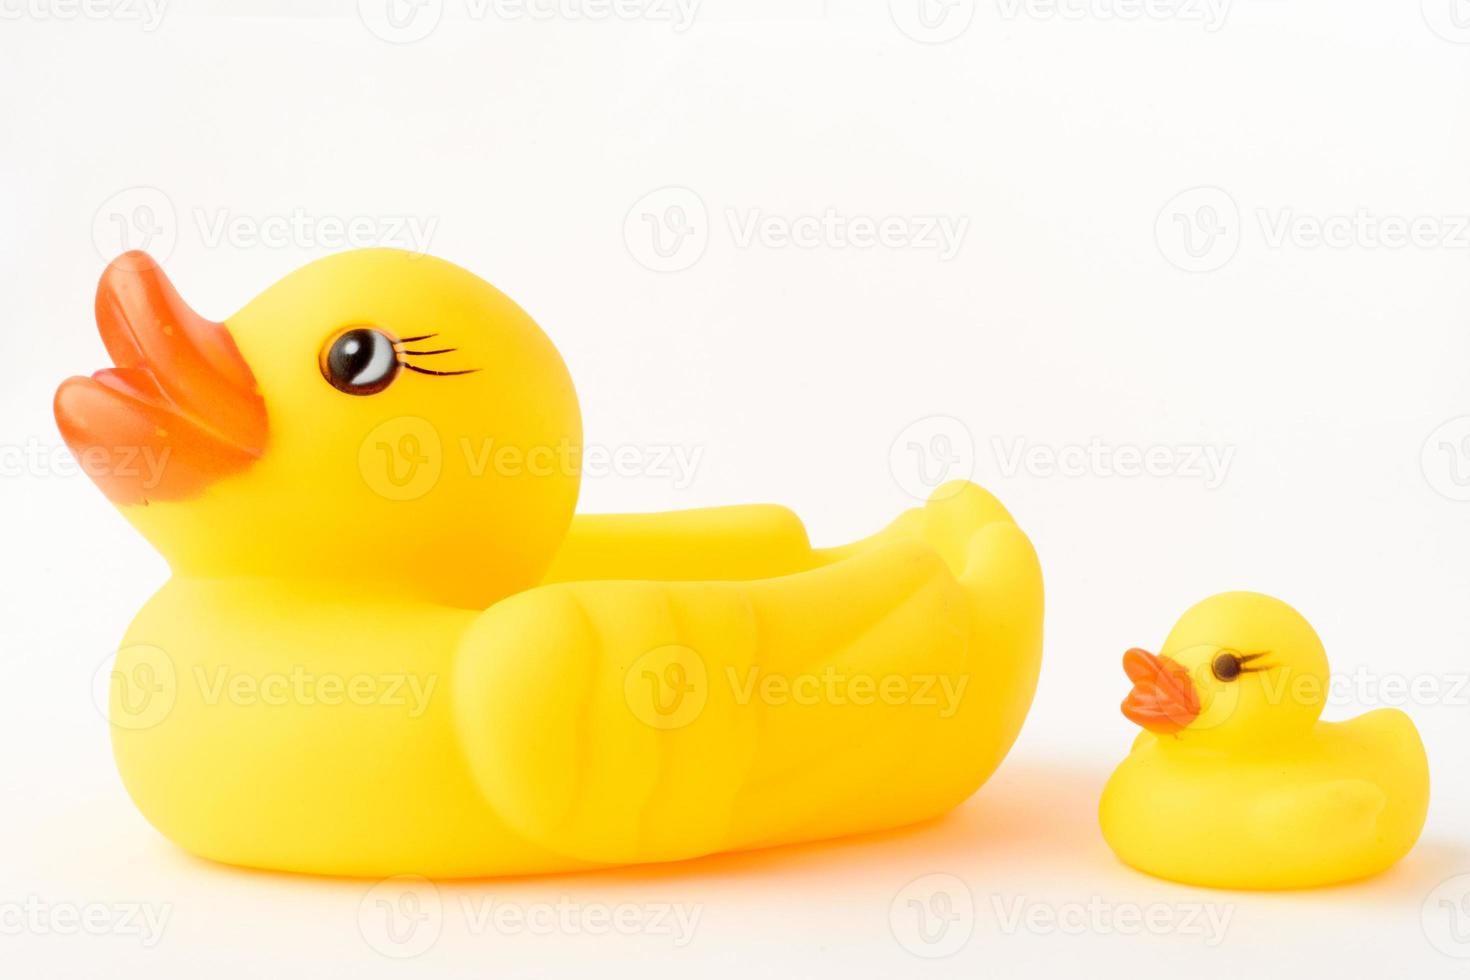 brinquedo de pato inflável amarelo com um patinho. Isolado em um fundo branco. foto